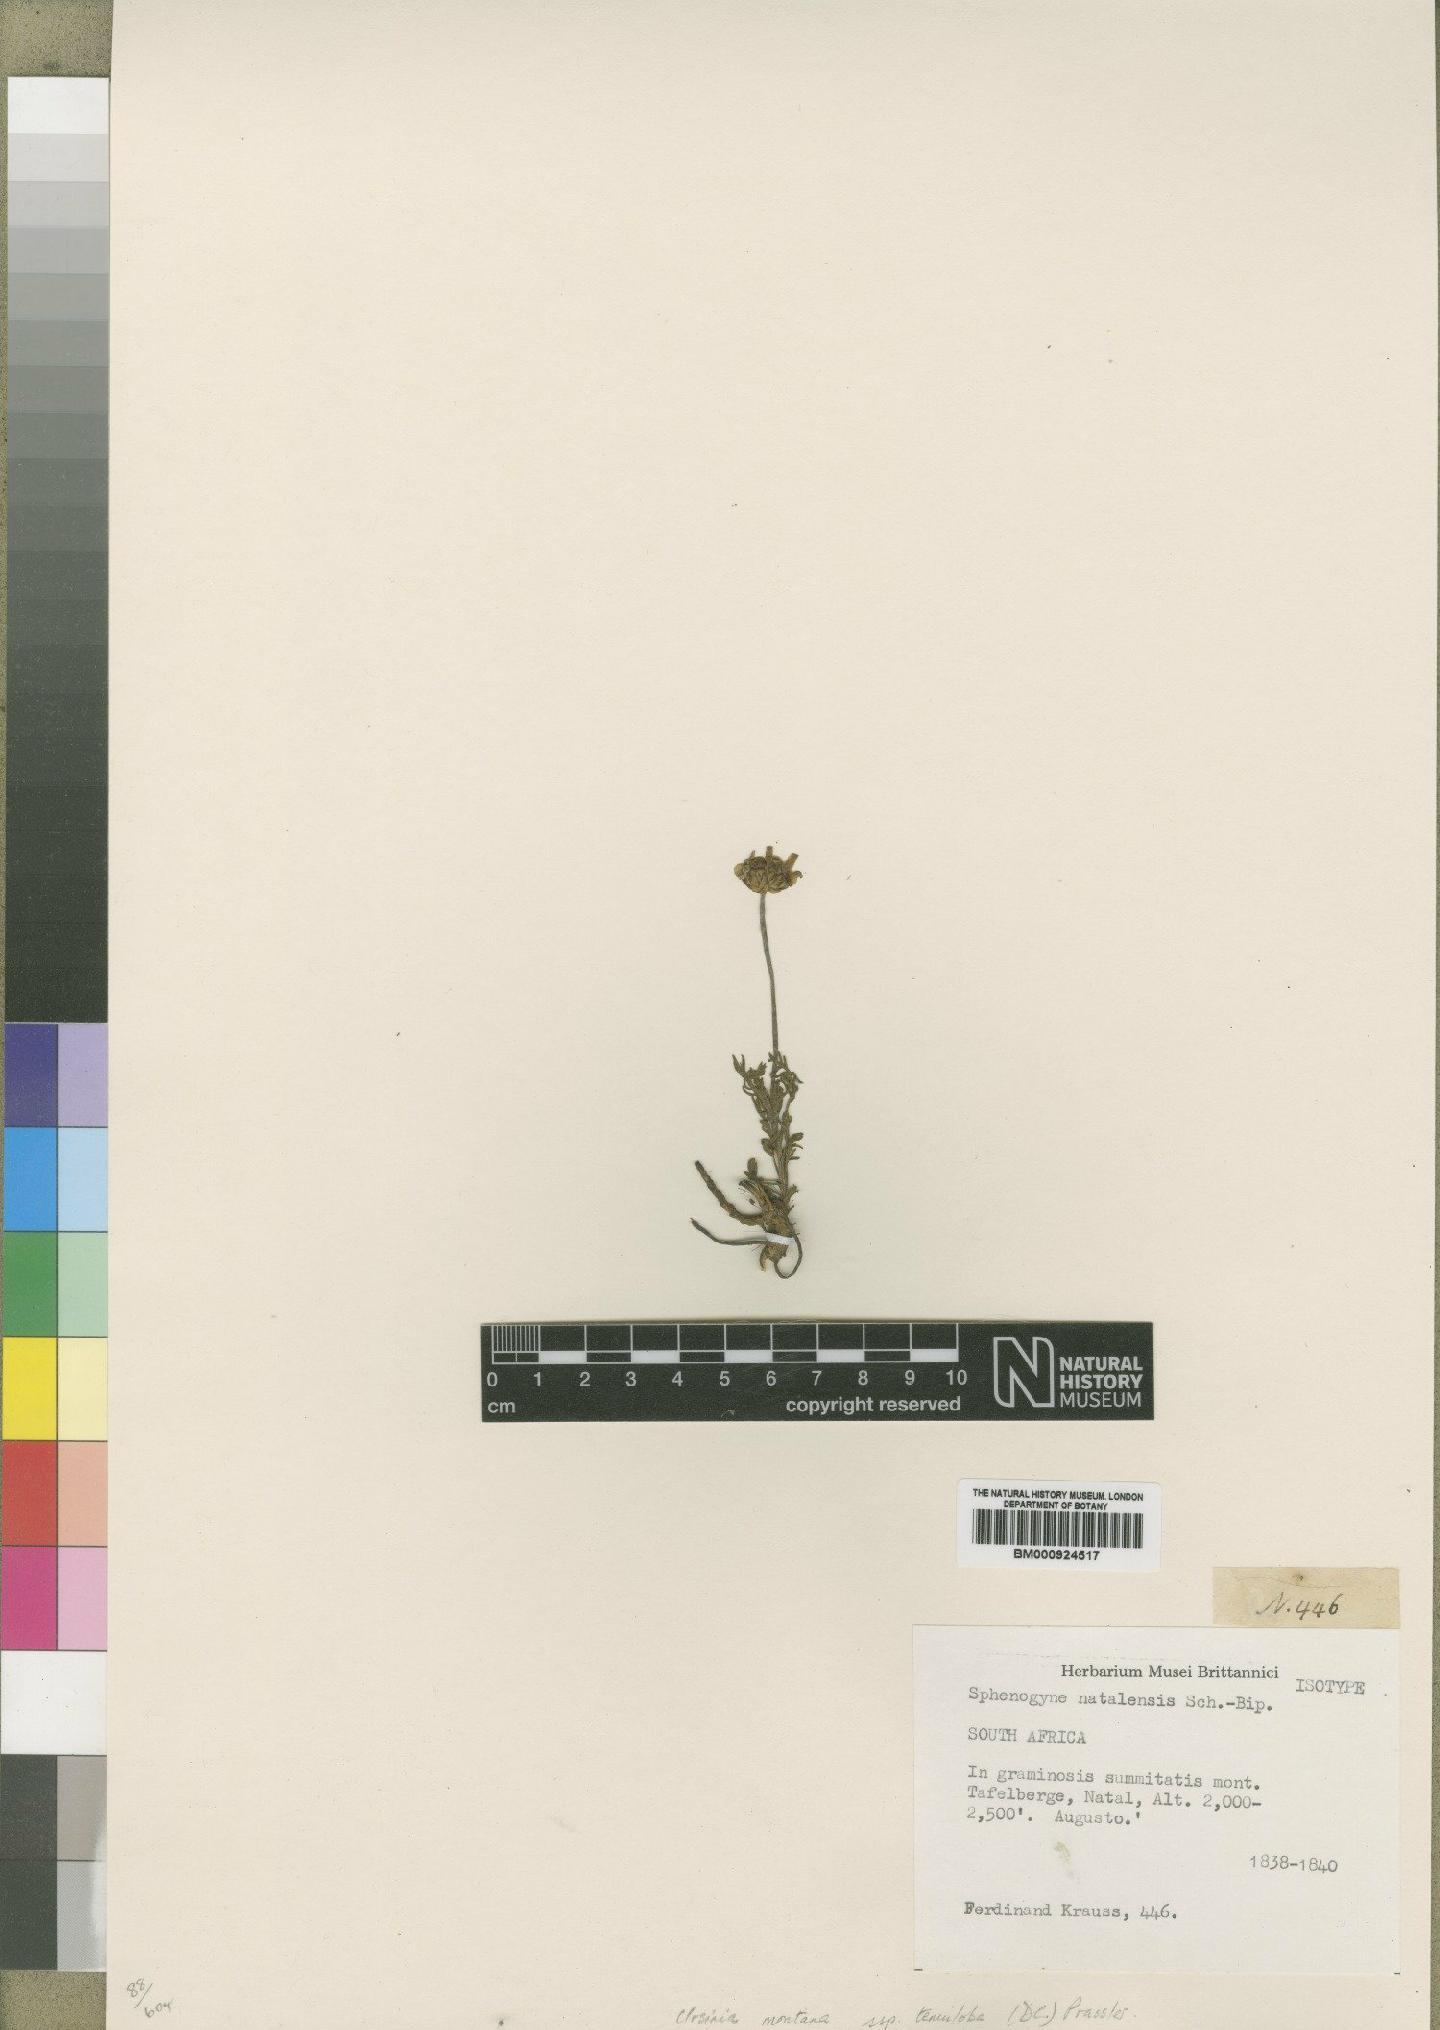 To NHMUK collection (Ursinia montana subsp. tenuiloba (DC.) Prassler; Isotype; NHMUK:ecatalogue:4529531)